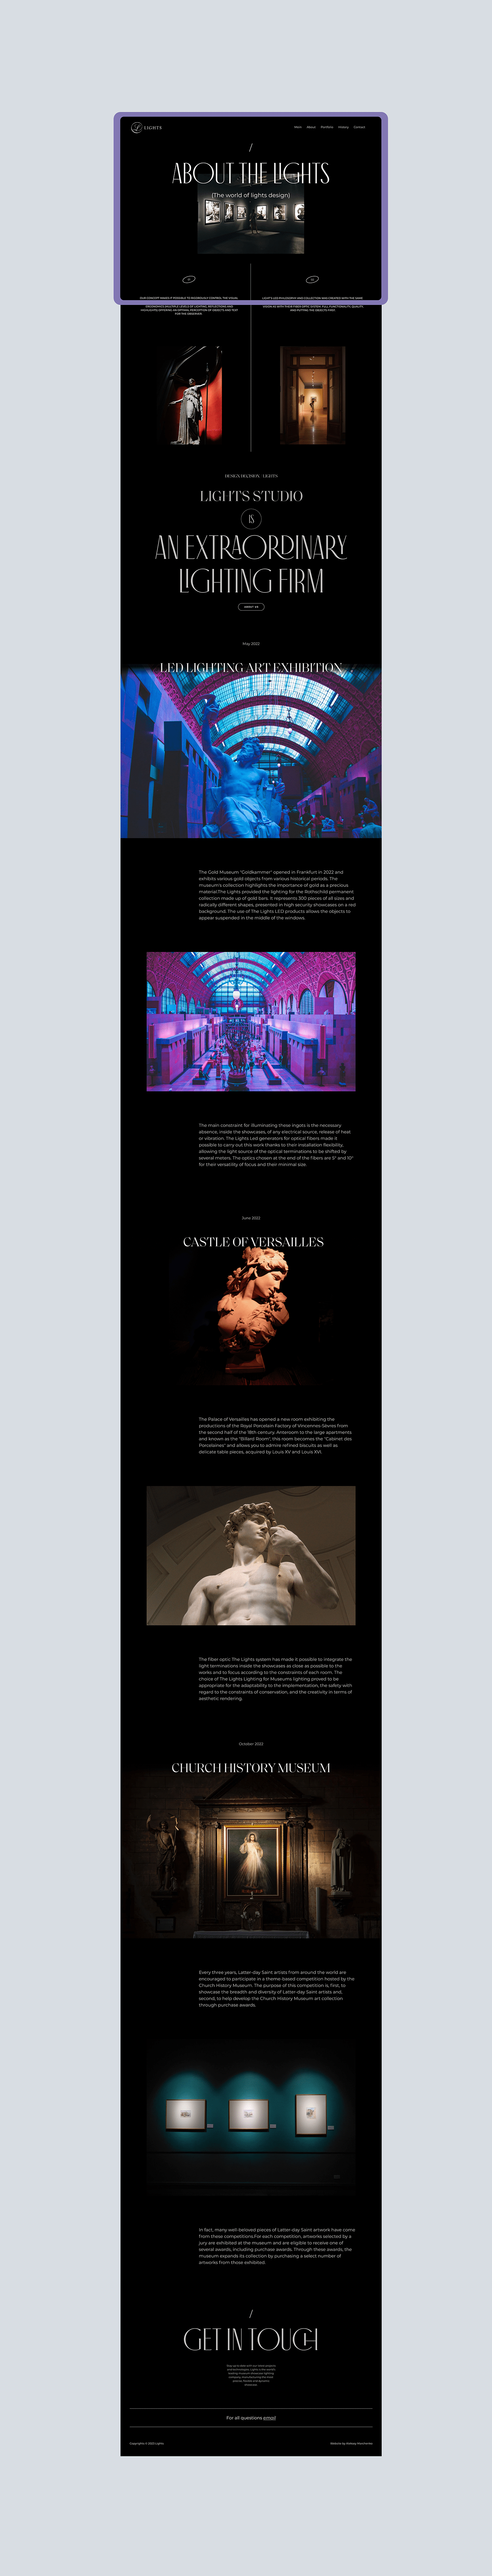 dark Exhibition  gallery lights mobile design museum uiux Webflow Website Website Design